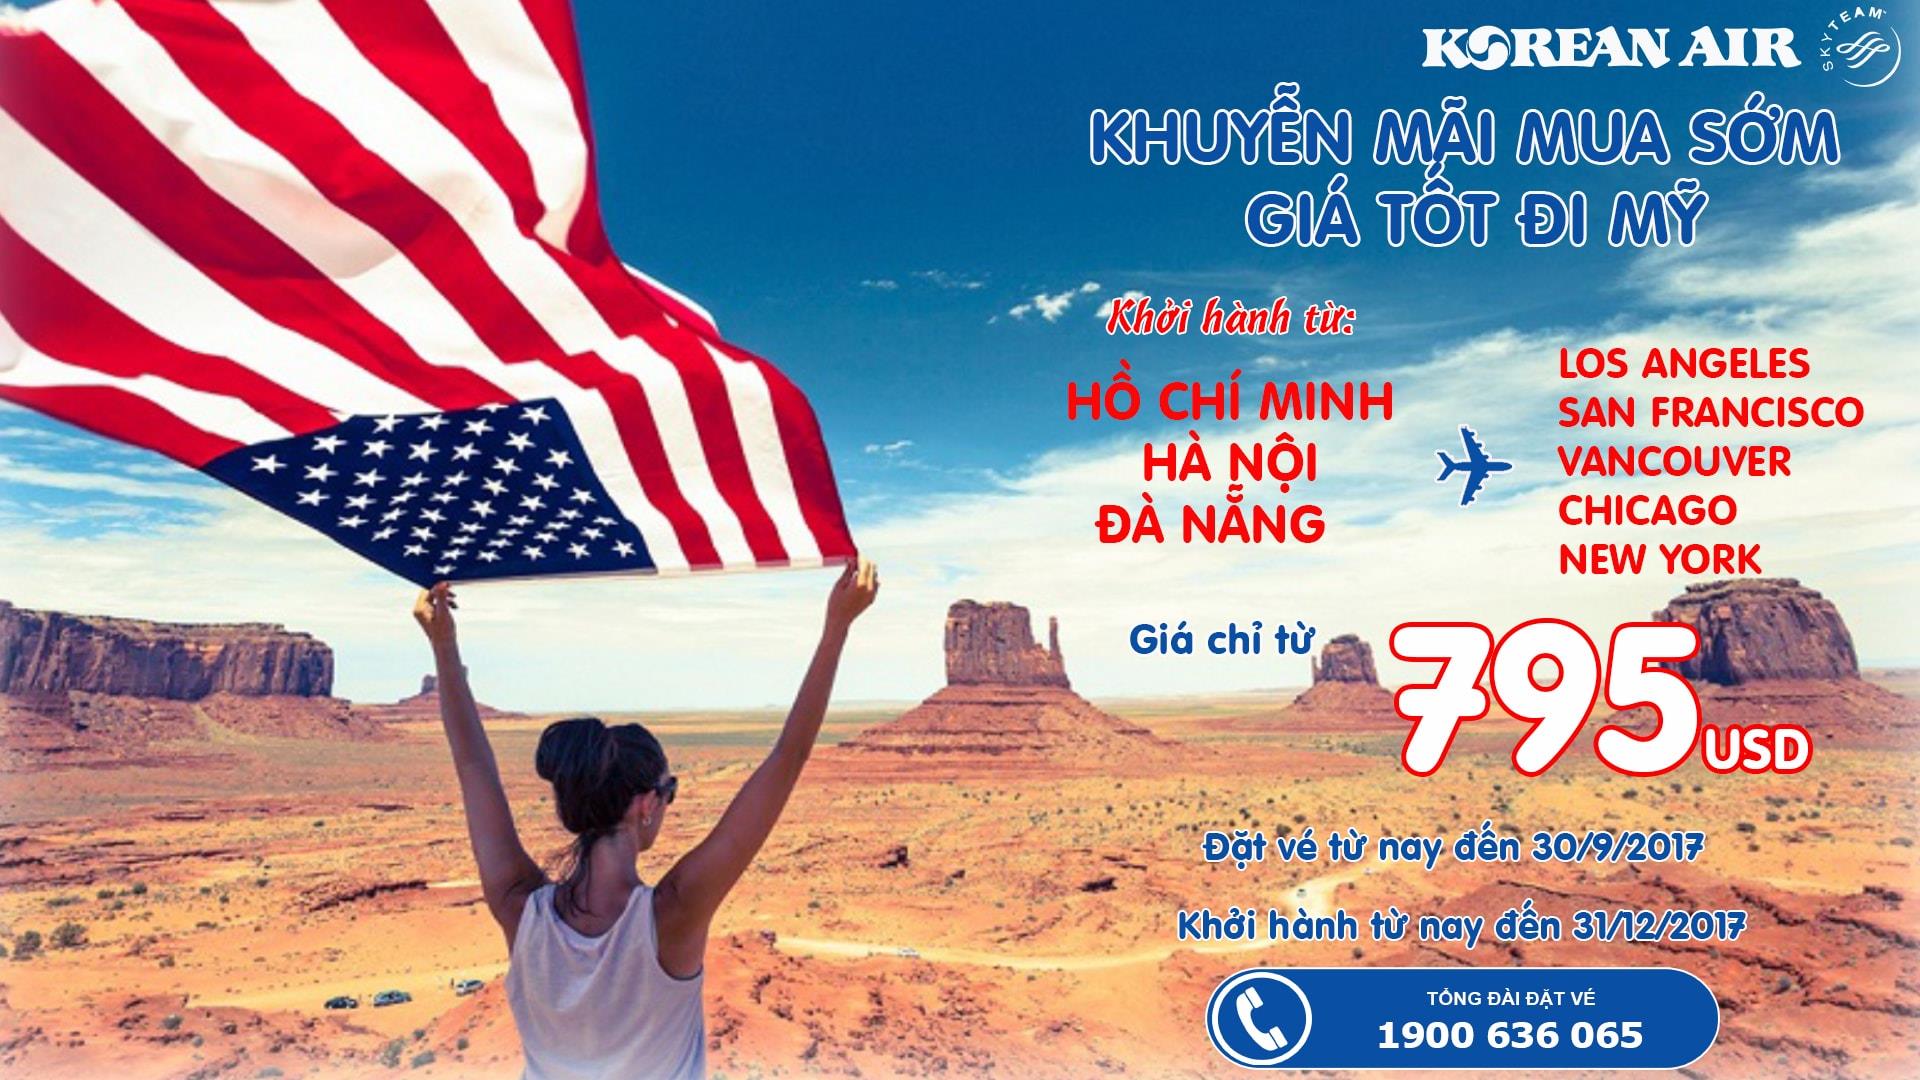 Đi Mỹ giá tốt khởi hành từ Việt nam vé khứ hồi chỉ từ 795 USD hạng phổ thông